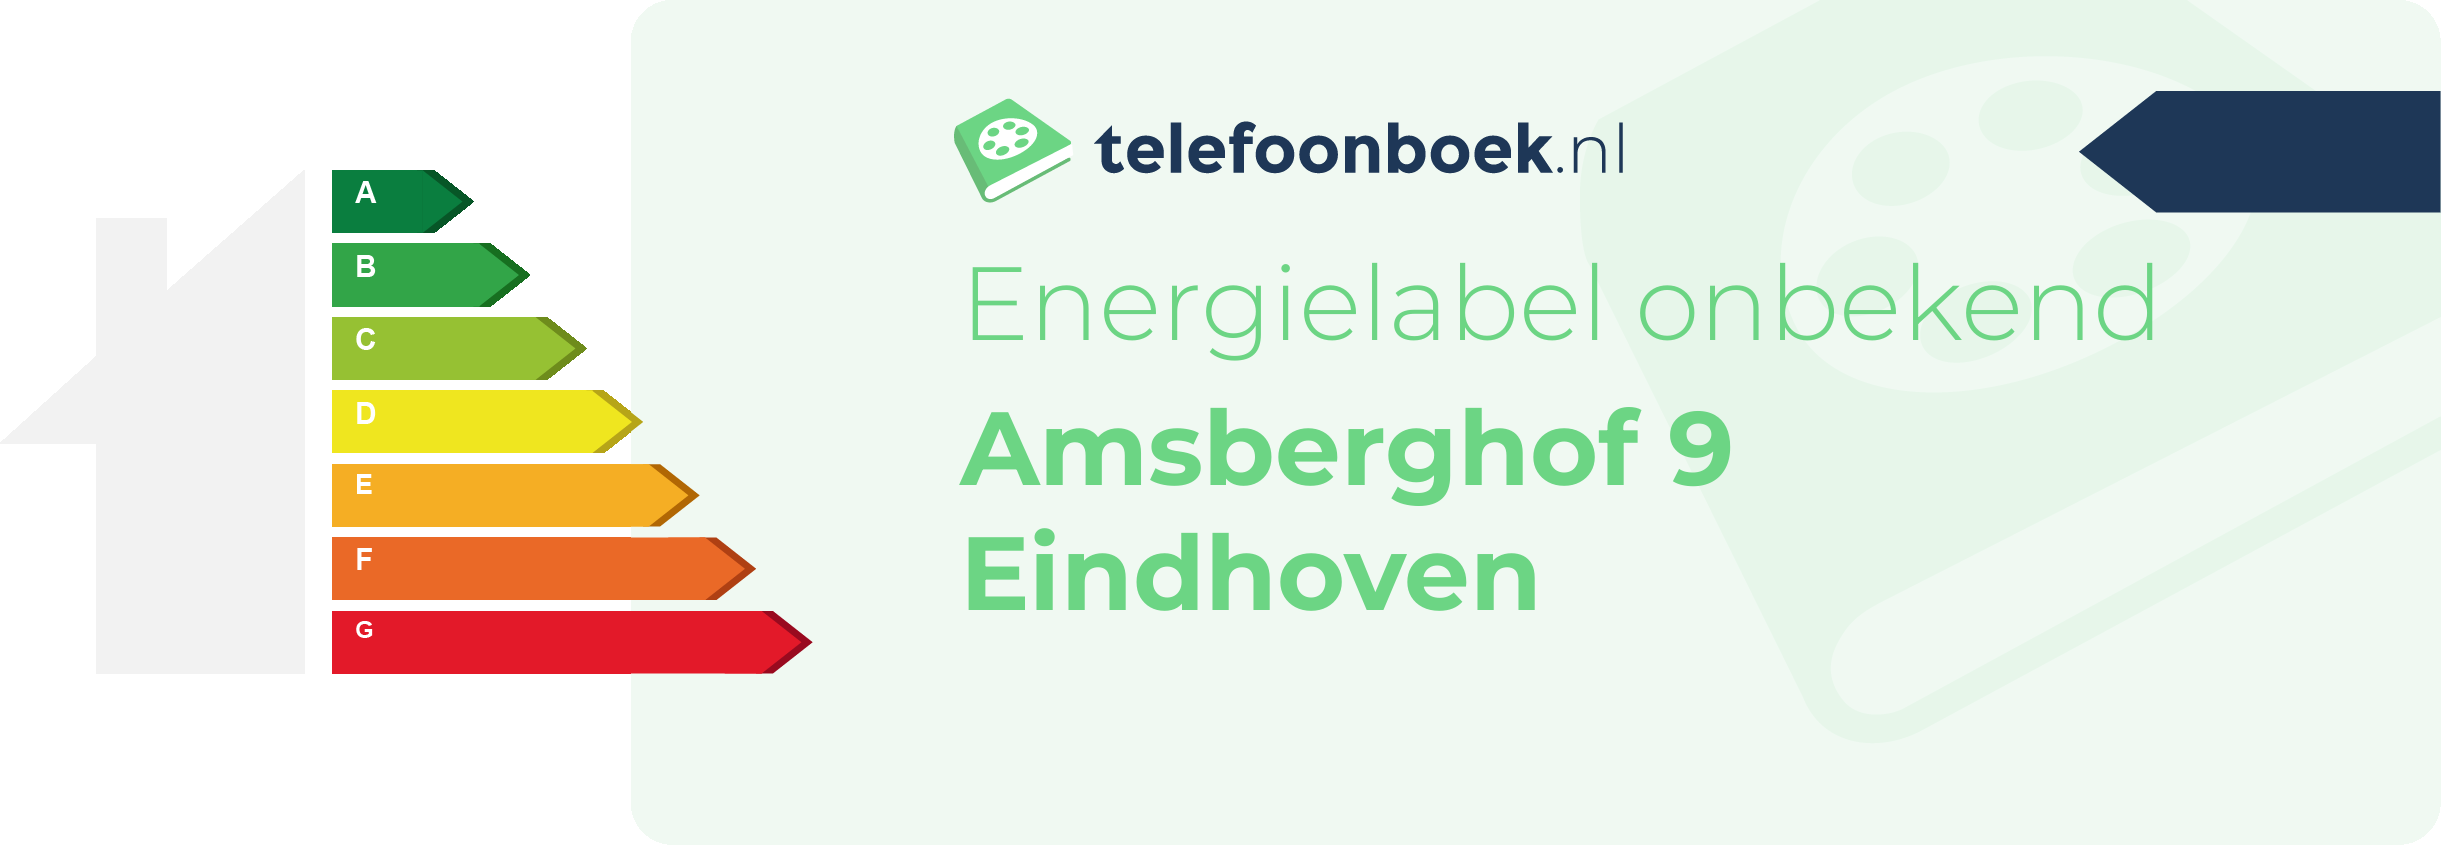 Energielabel Amsberghof 9 Eindhoven